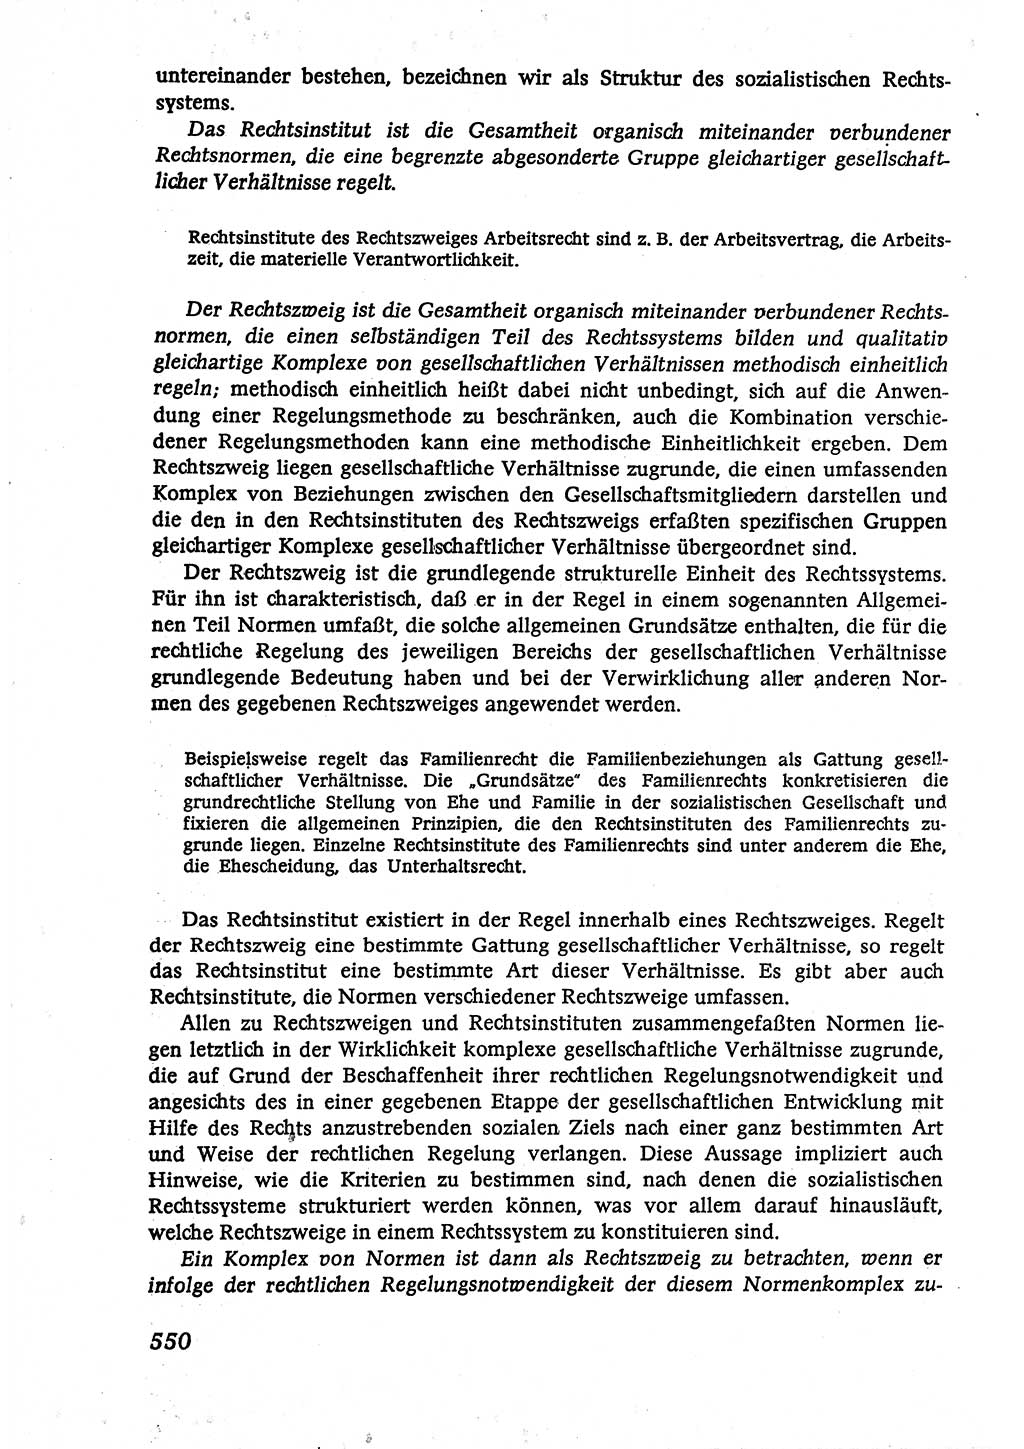 Marxistisch-leninistische (ML) Staats- und Rechtstheorie [Deutsche Demokratische Republik (DDR)], Lehrbuch 1980, Seite 550 (ML St.-R.-Th. DDR Lb. 1980, S. 550)